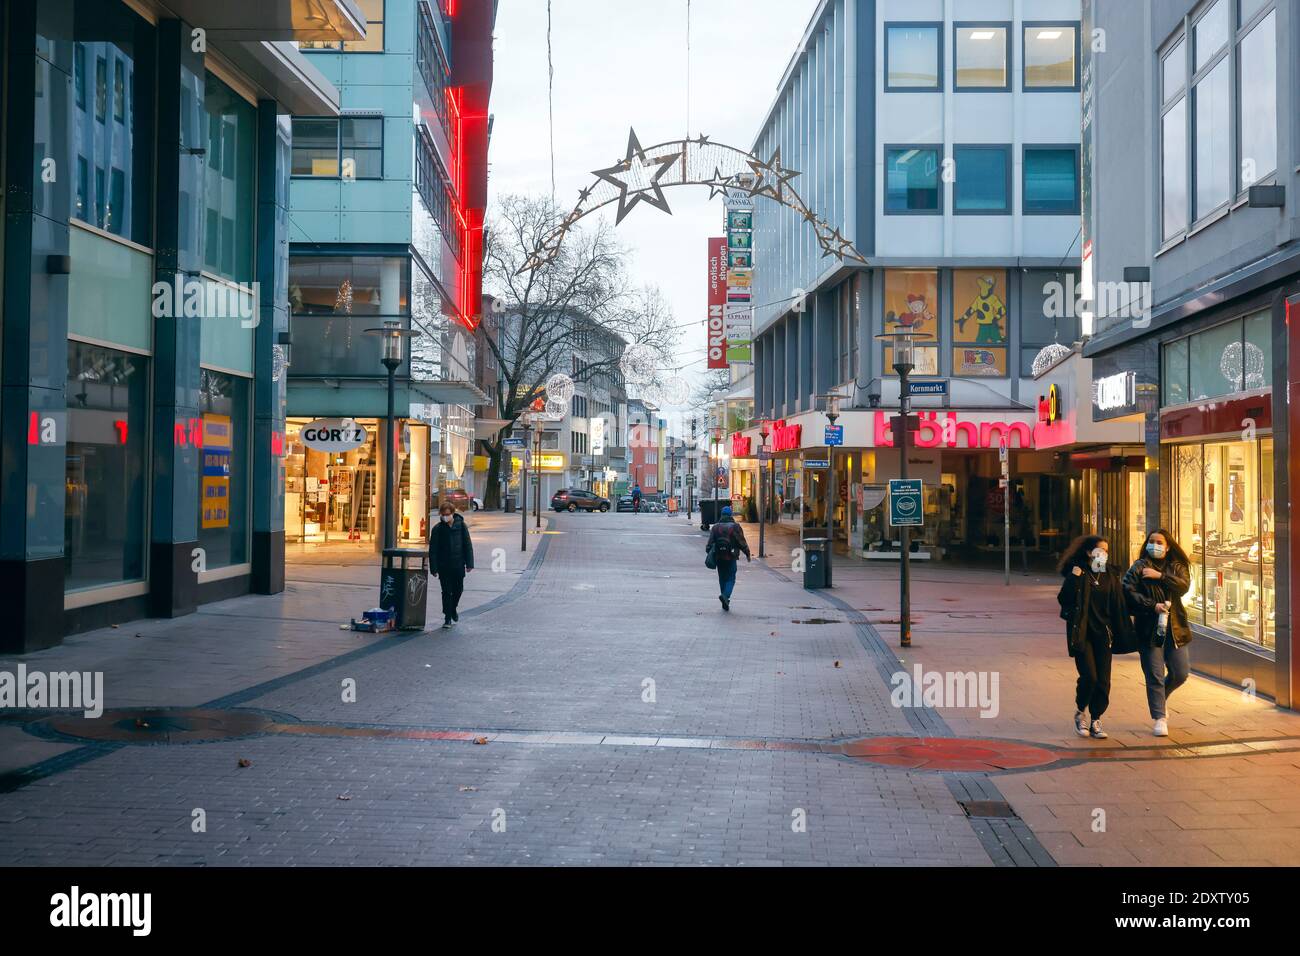 Essen, área de Ruhr, Renania del Norte-Westfalia, Alemania - Essen centro de la ciudad en tiempos de la crisis de Corona durante el segundo cierre el día antes de Navidad Foto de stock